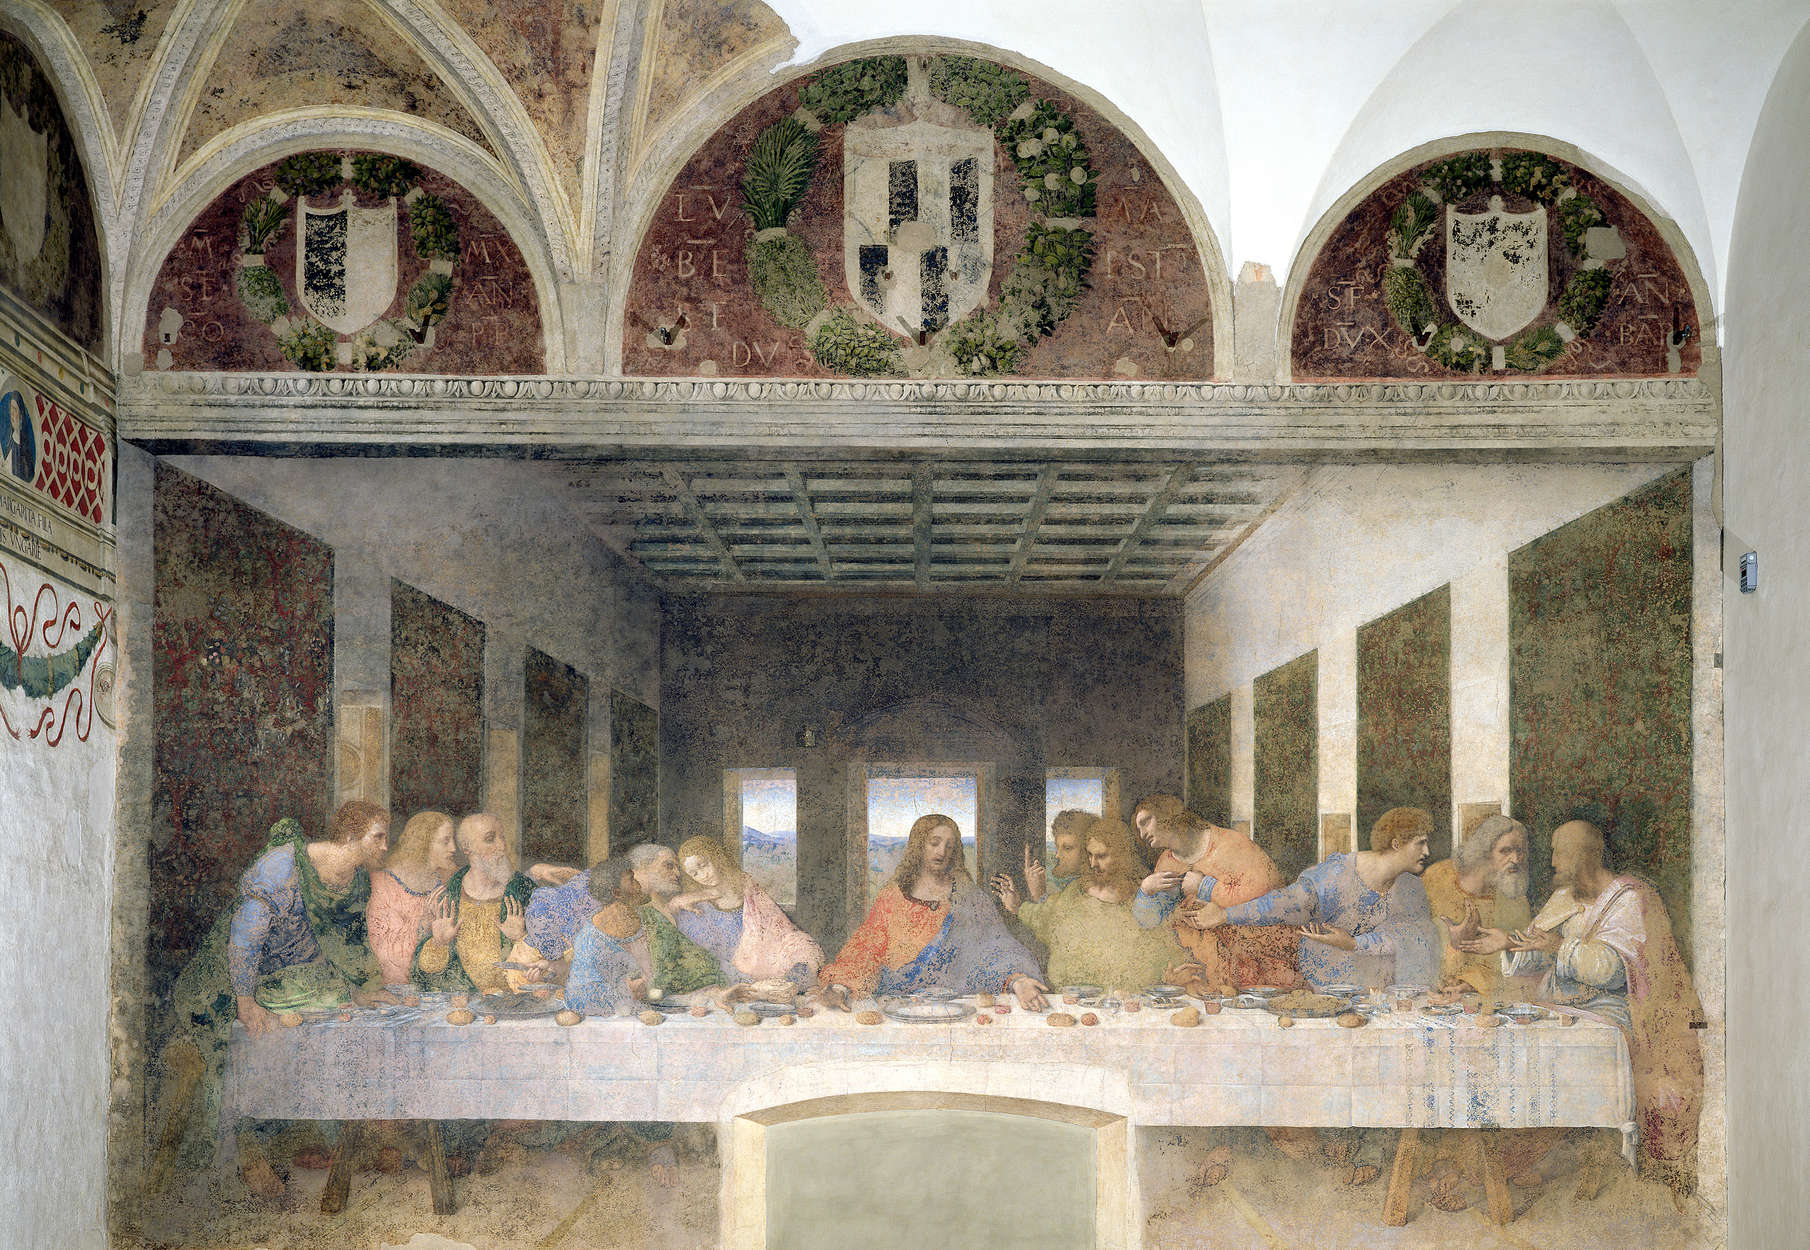             The Last Supper" mural by Leonardo da Vinci
        